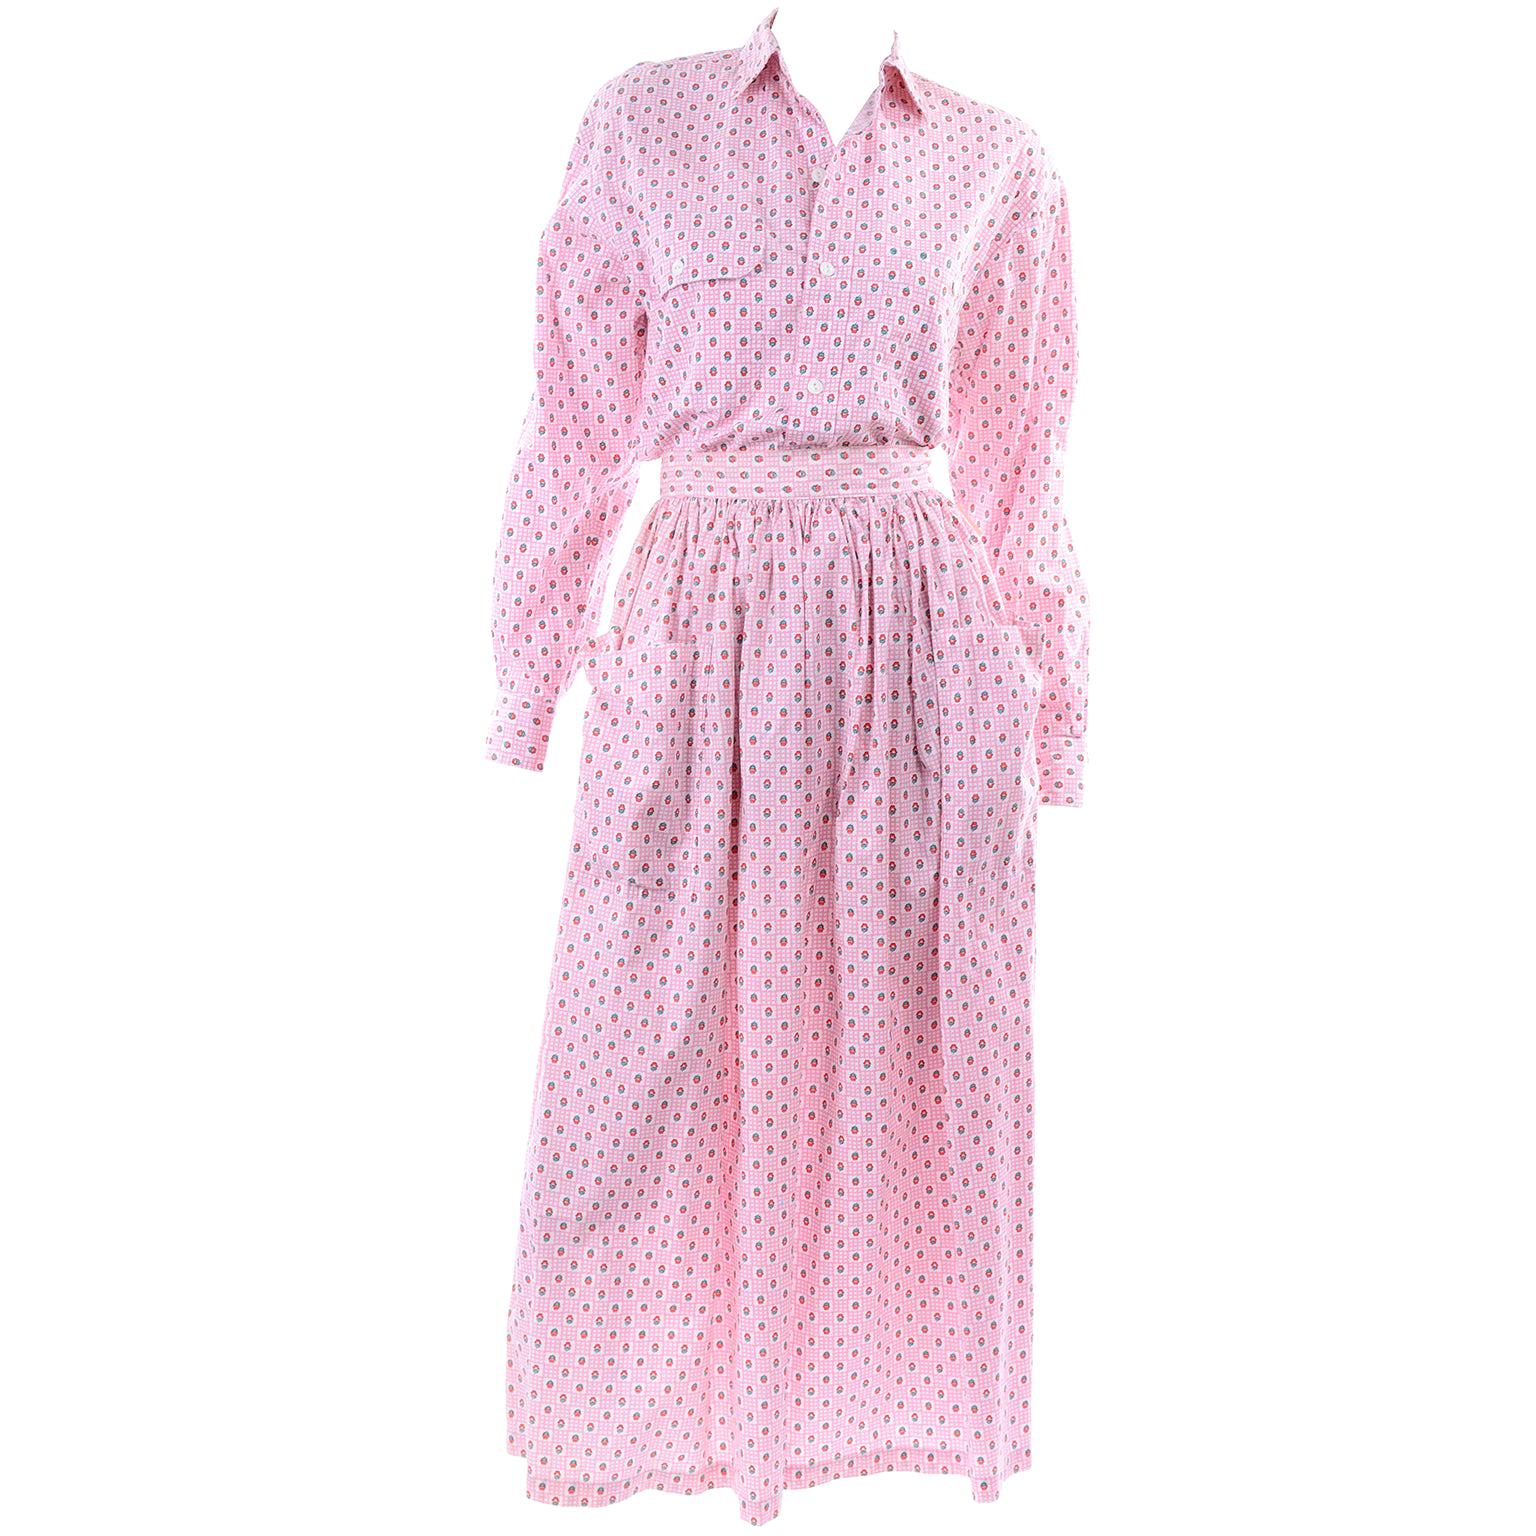 Deadstock Vintage Ralph Lauren 2-teiliges Vintage-Kleid mit Rock und Bluse in Rosa mit Blumenmuster, neu mit Preisschild